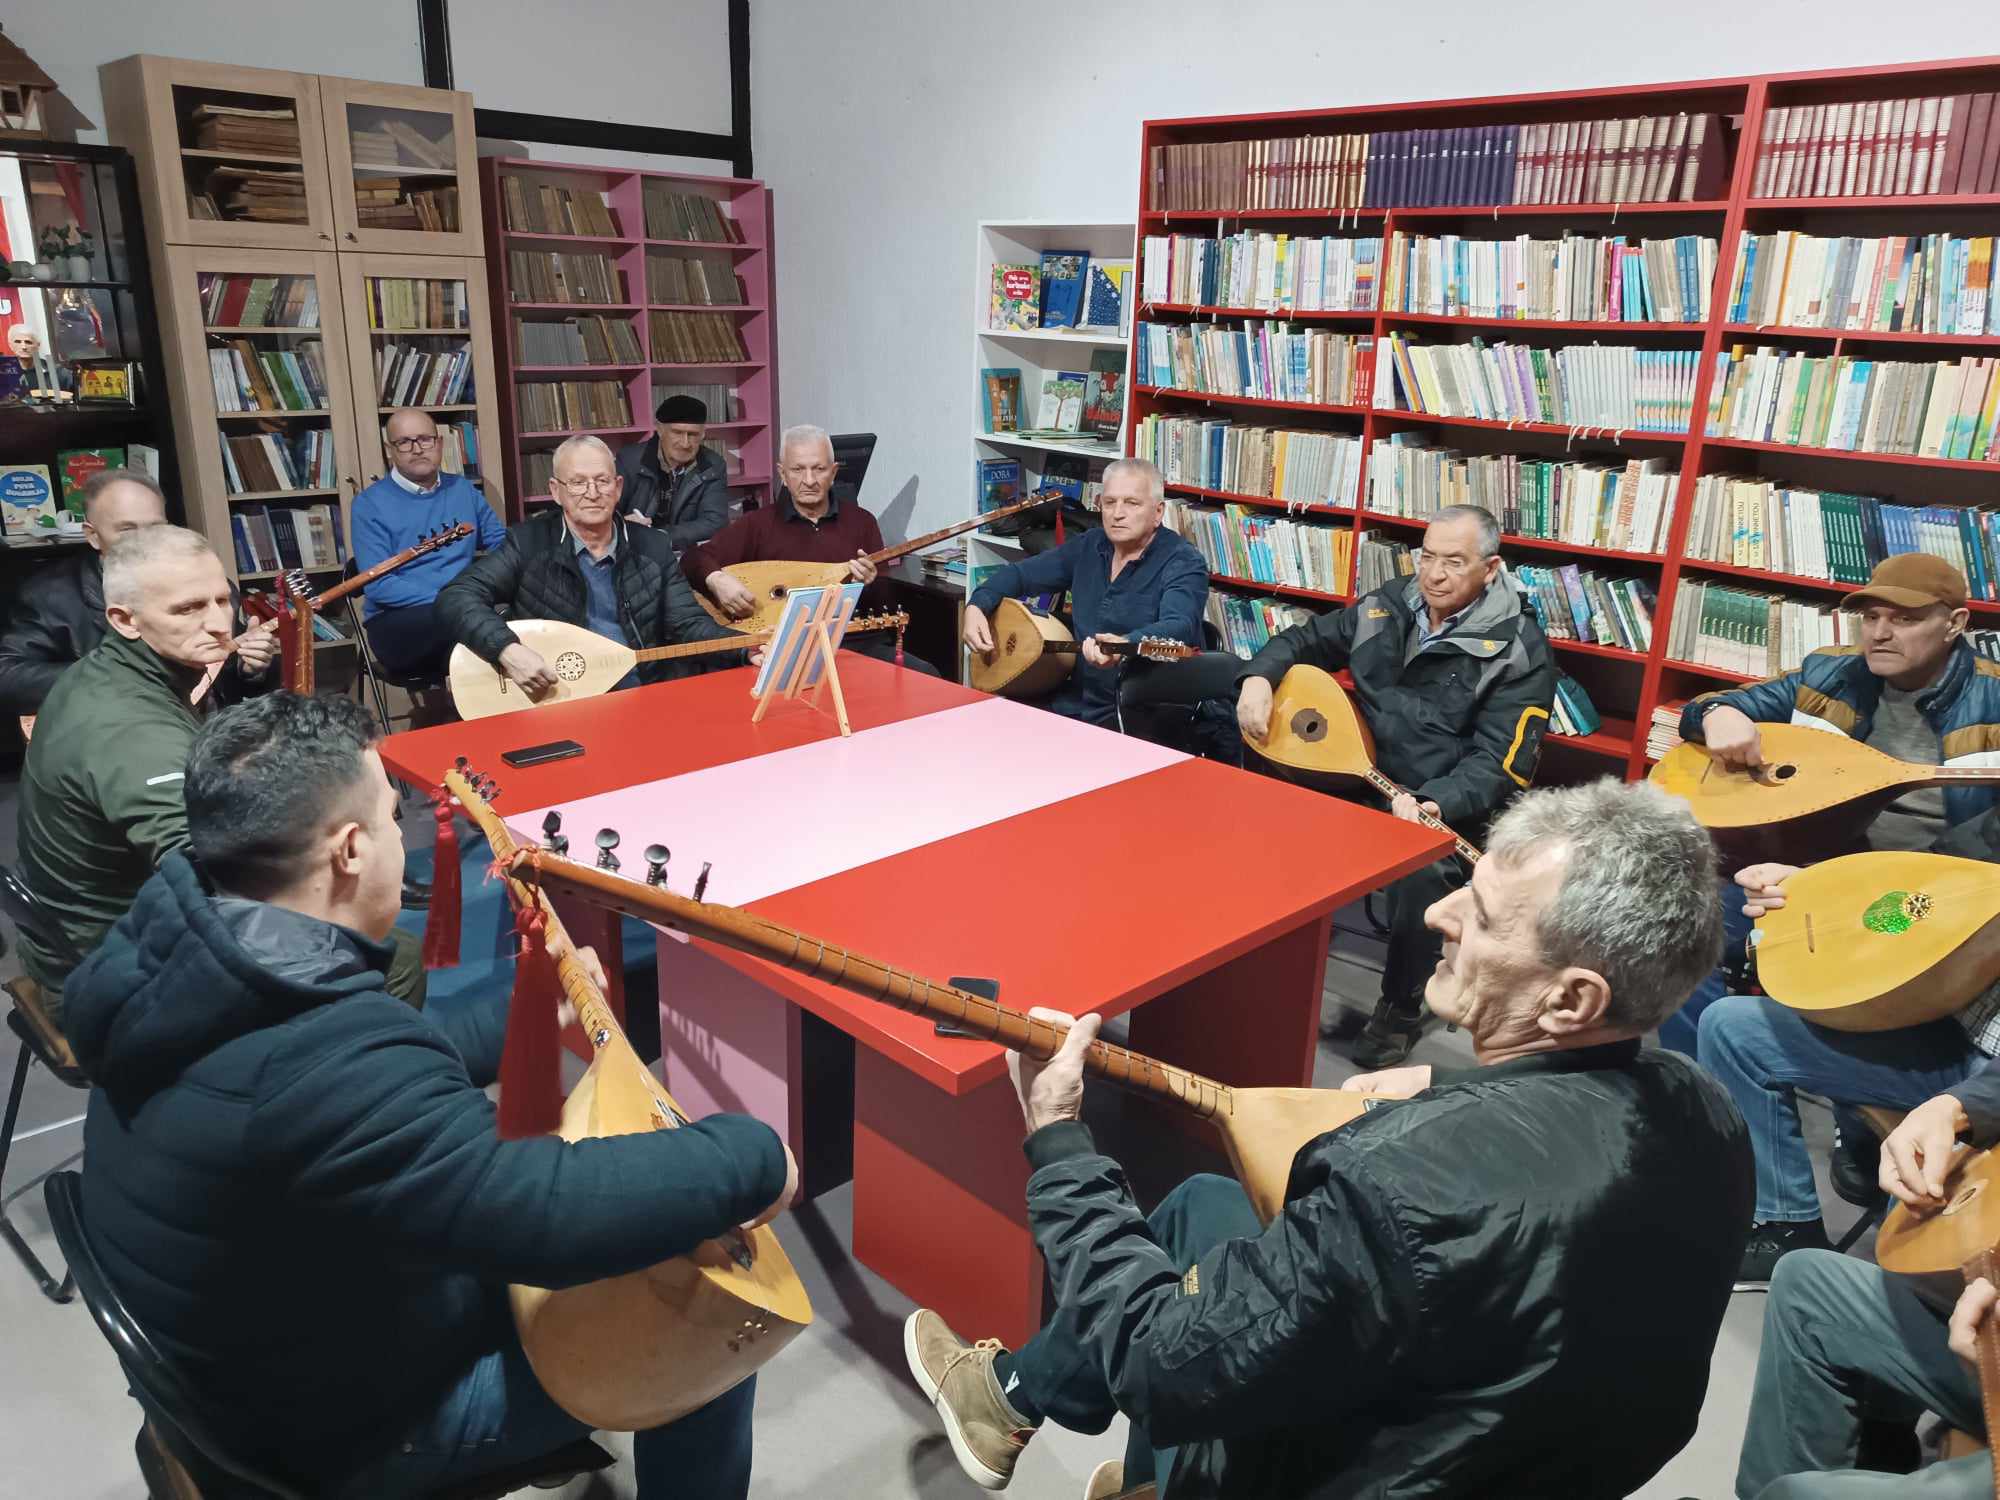 Živiničke sazlije pripremaju spektakularan koncert za Dan nezavisnosti BiH